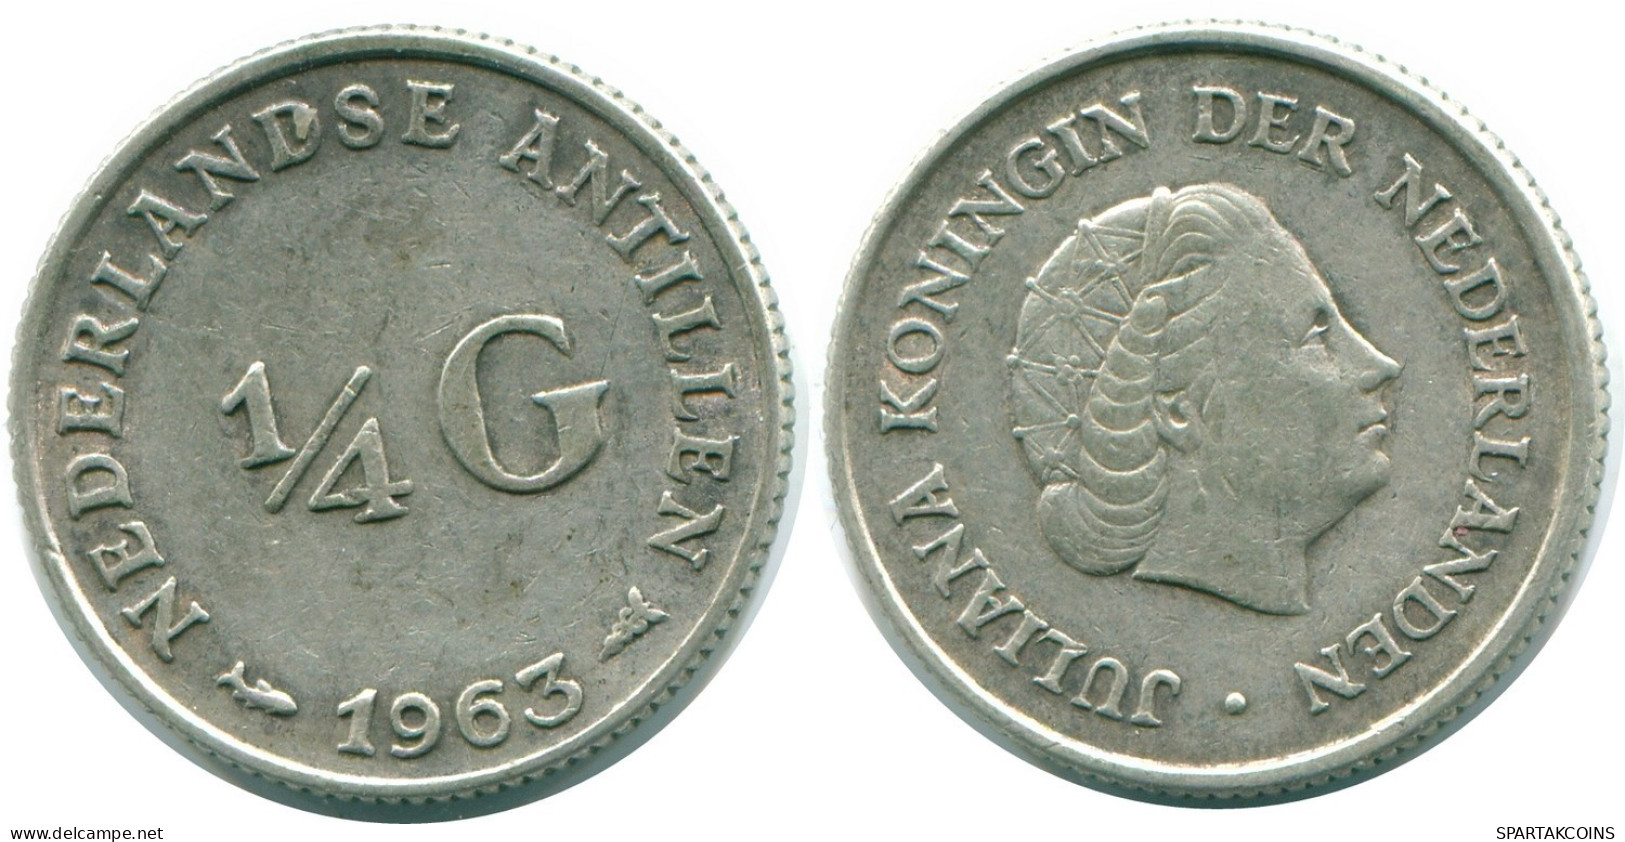 1/4 GULDEN 1962 NIEDERLÄNDISCHE ANTILLEN SILBER Koloniale Münze #NL11181.4.D.A - Nederlandse Antillen